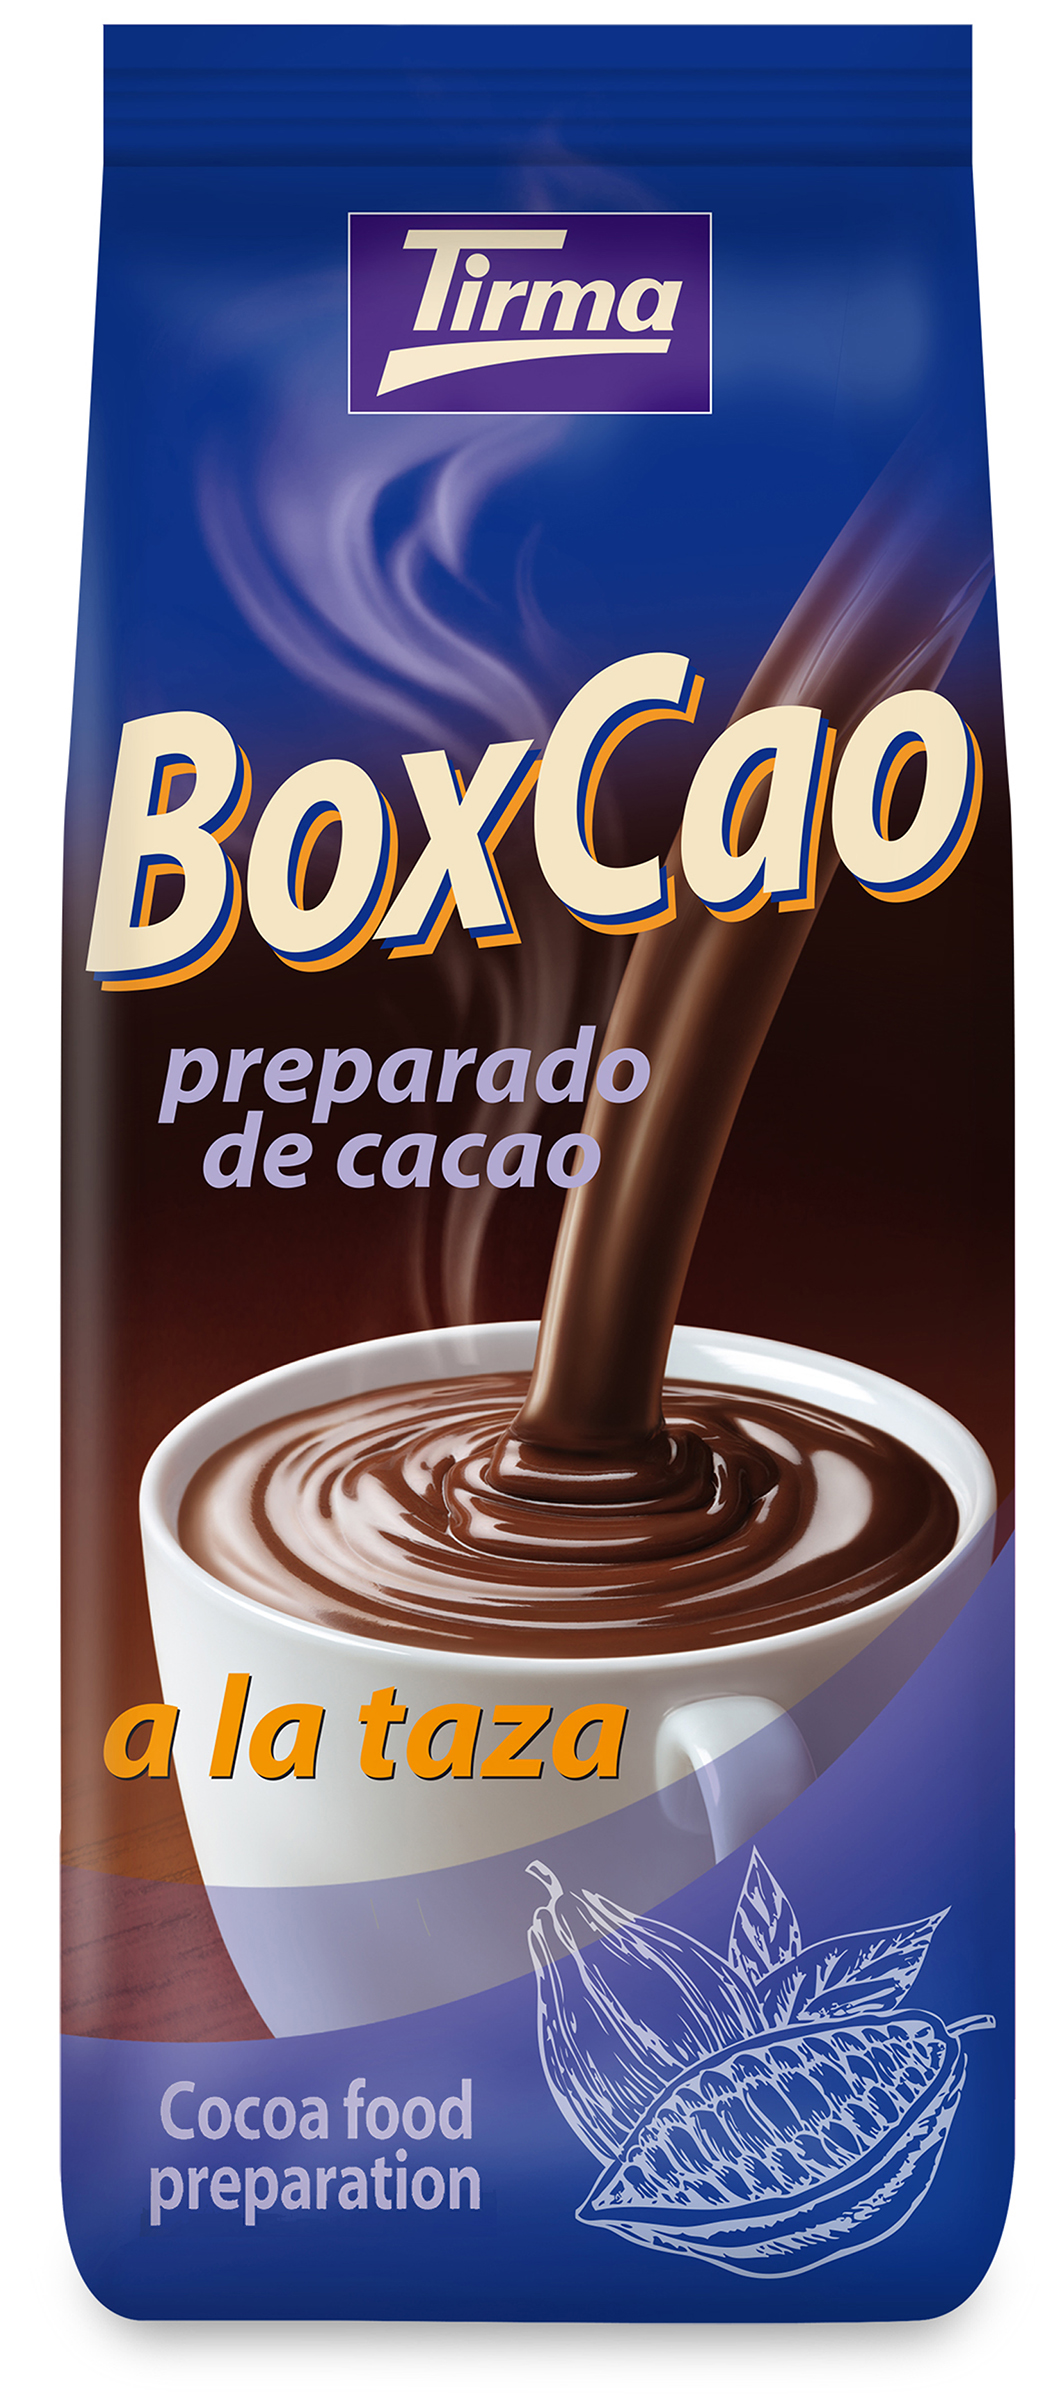 Boxcao preparado de cacao a la taza 1.000g